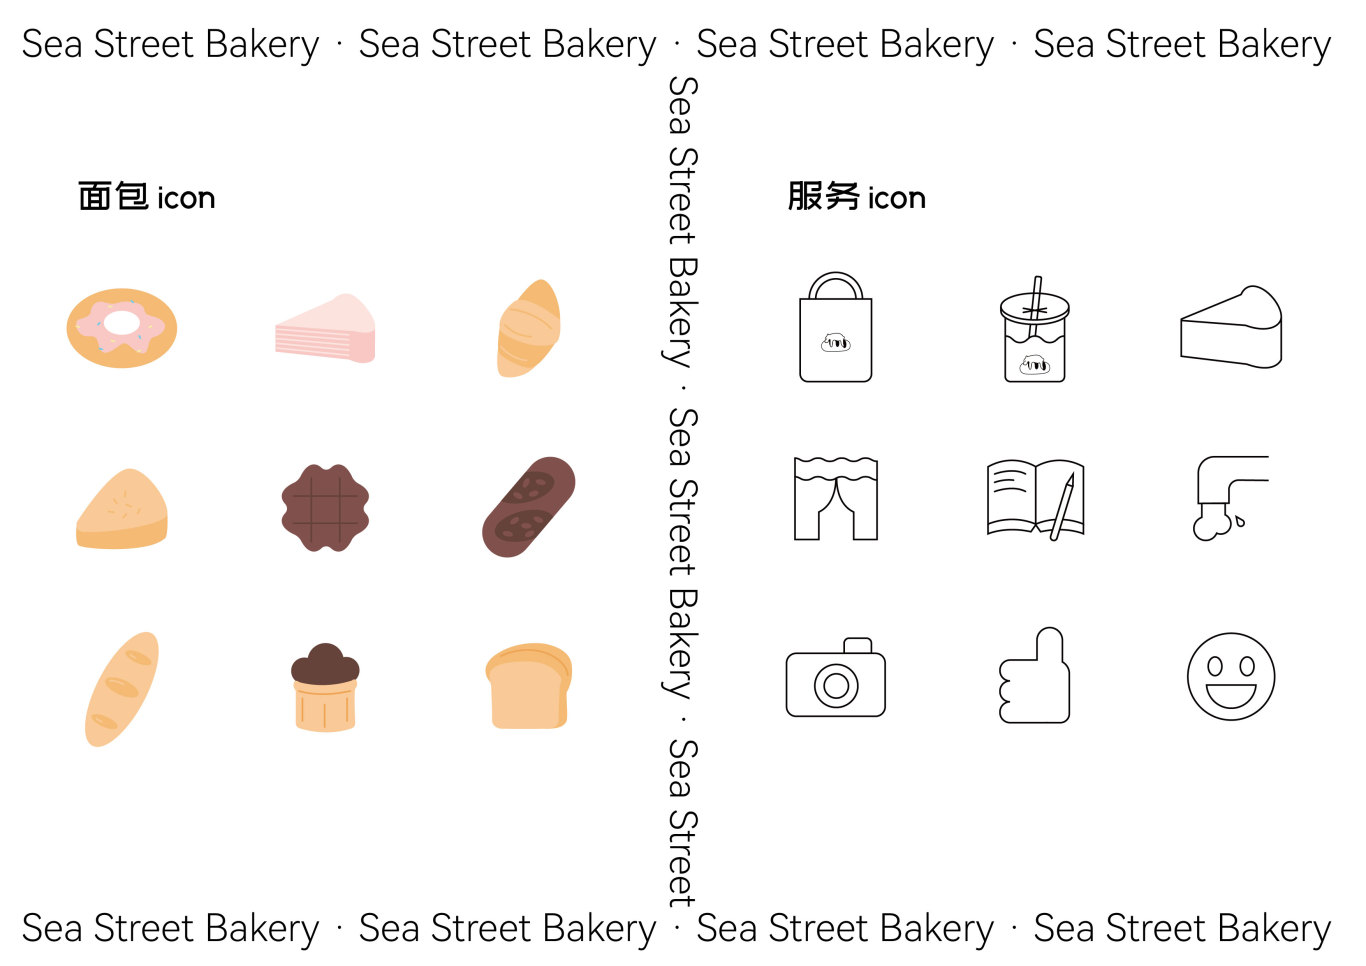 海街面包品牌設計圖1